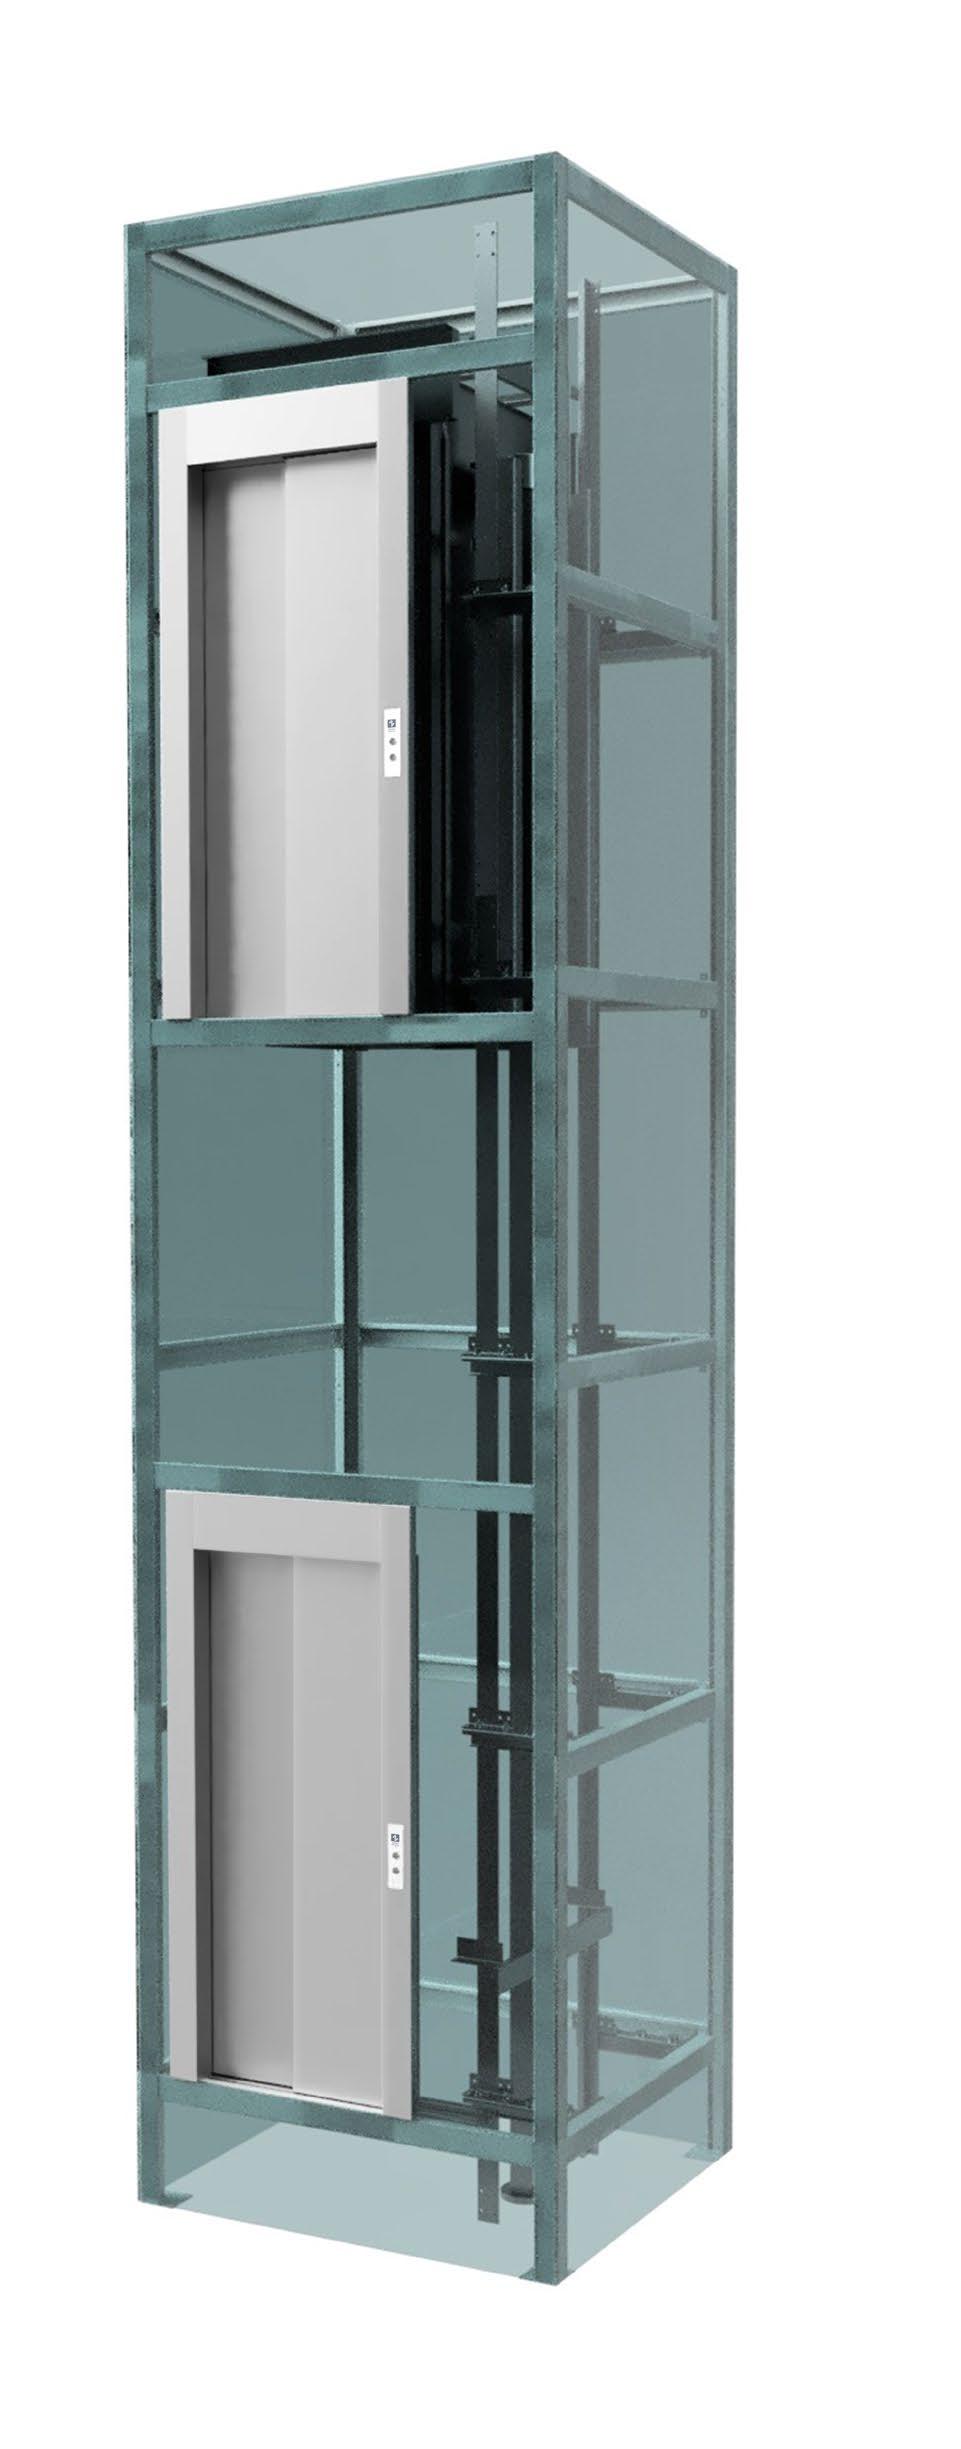 Montagem em estrutura metálica A montagem do elevador pode ser opcionalmente em estrutura metálica, fornecida pela Zenit, substituindo a tradicional caixa em alvenaria.